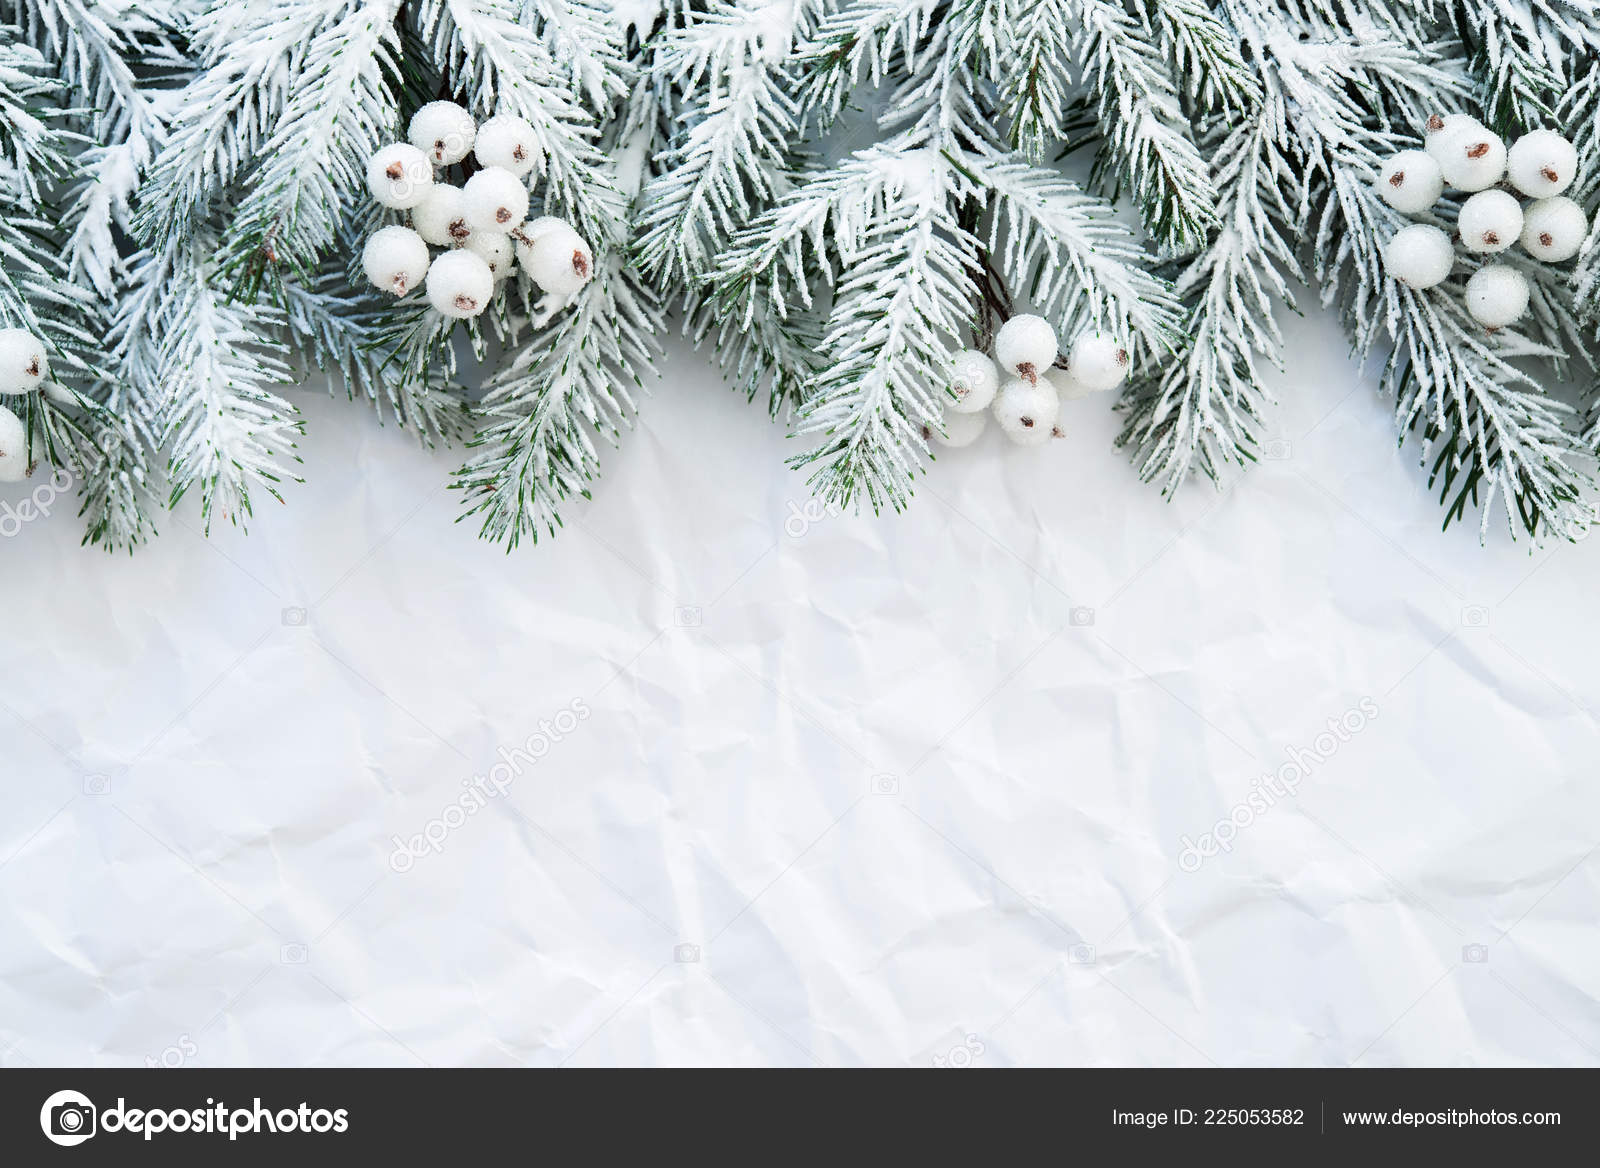 Cây thông Noel (Christmas tree): Cây thông Noel là biểu tượng đặc trưng của mùa Giáng Sinh. Hãy cùng ngắm nhìn những cây thông lộng lẫy, được trang trí chỉnh chu với đủ kiểu dáng và màu sắc để tạo nên một không gian Giáng sinh đầy sáng tạo và phấn khích.